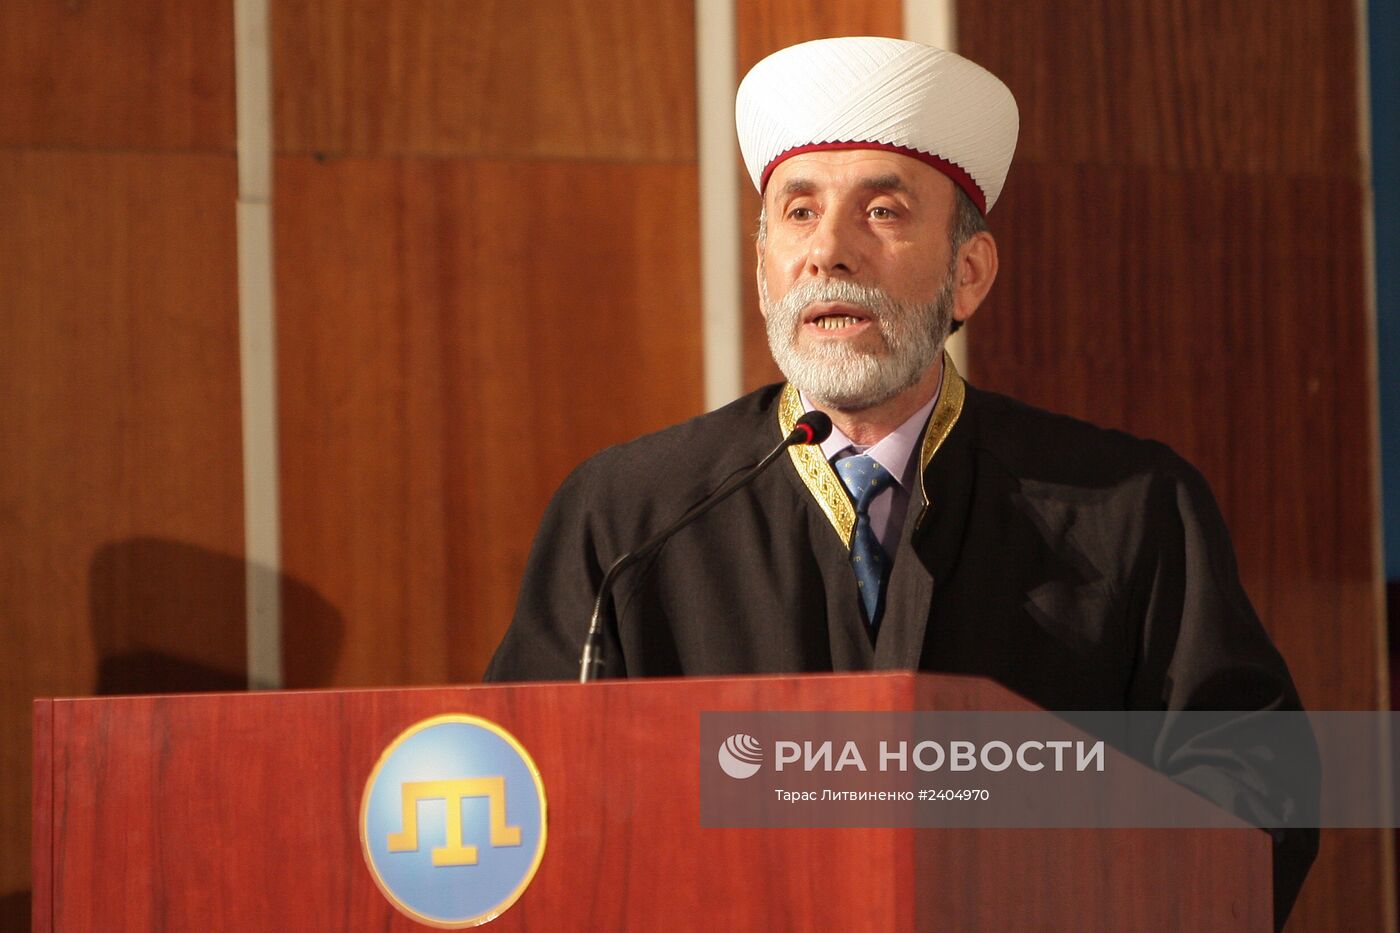 Национальный съезд крымских татар в Бахчисарае